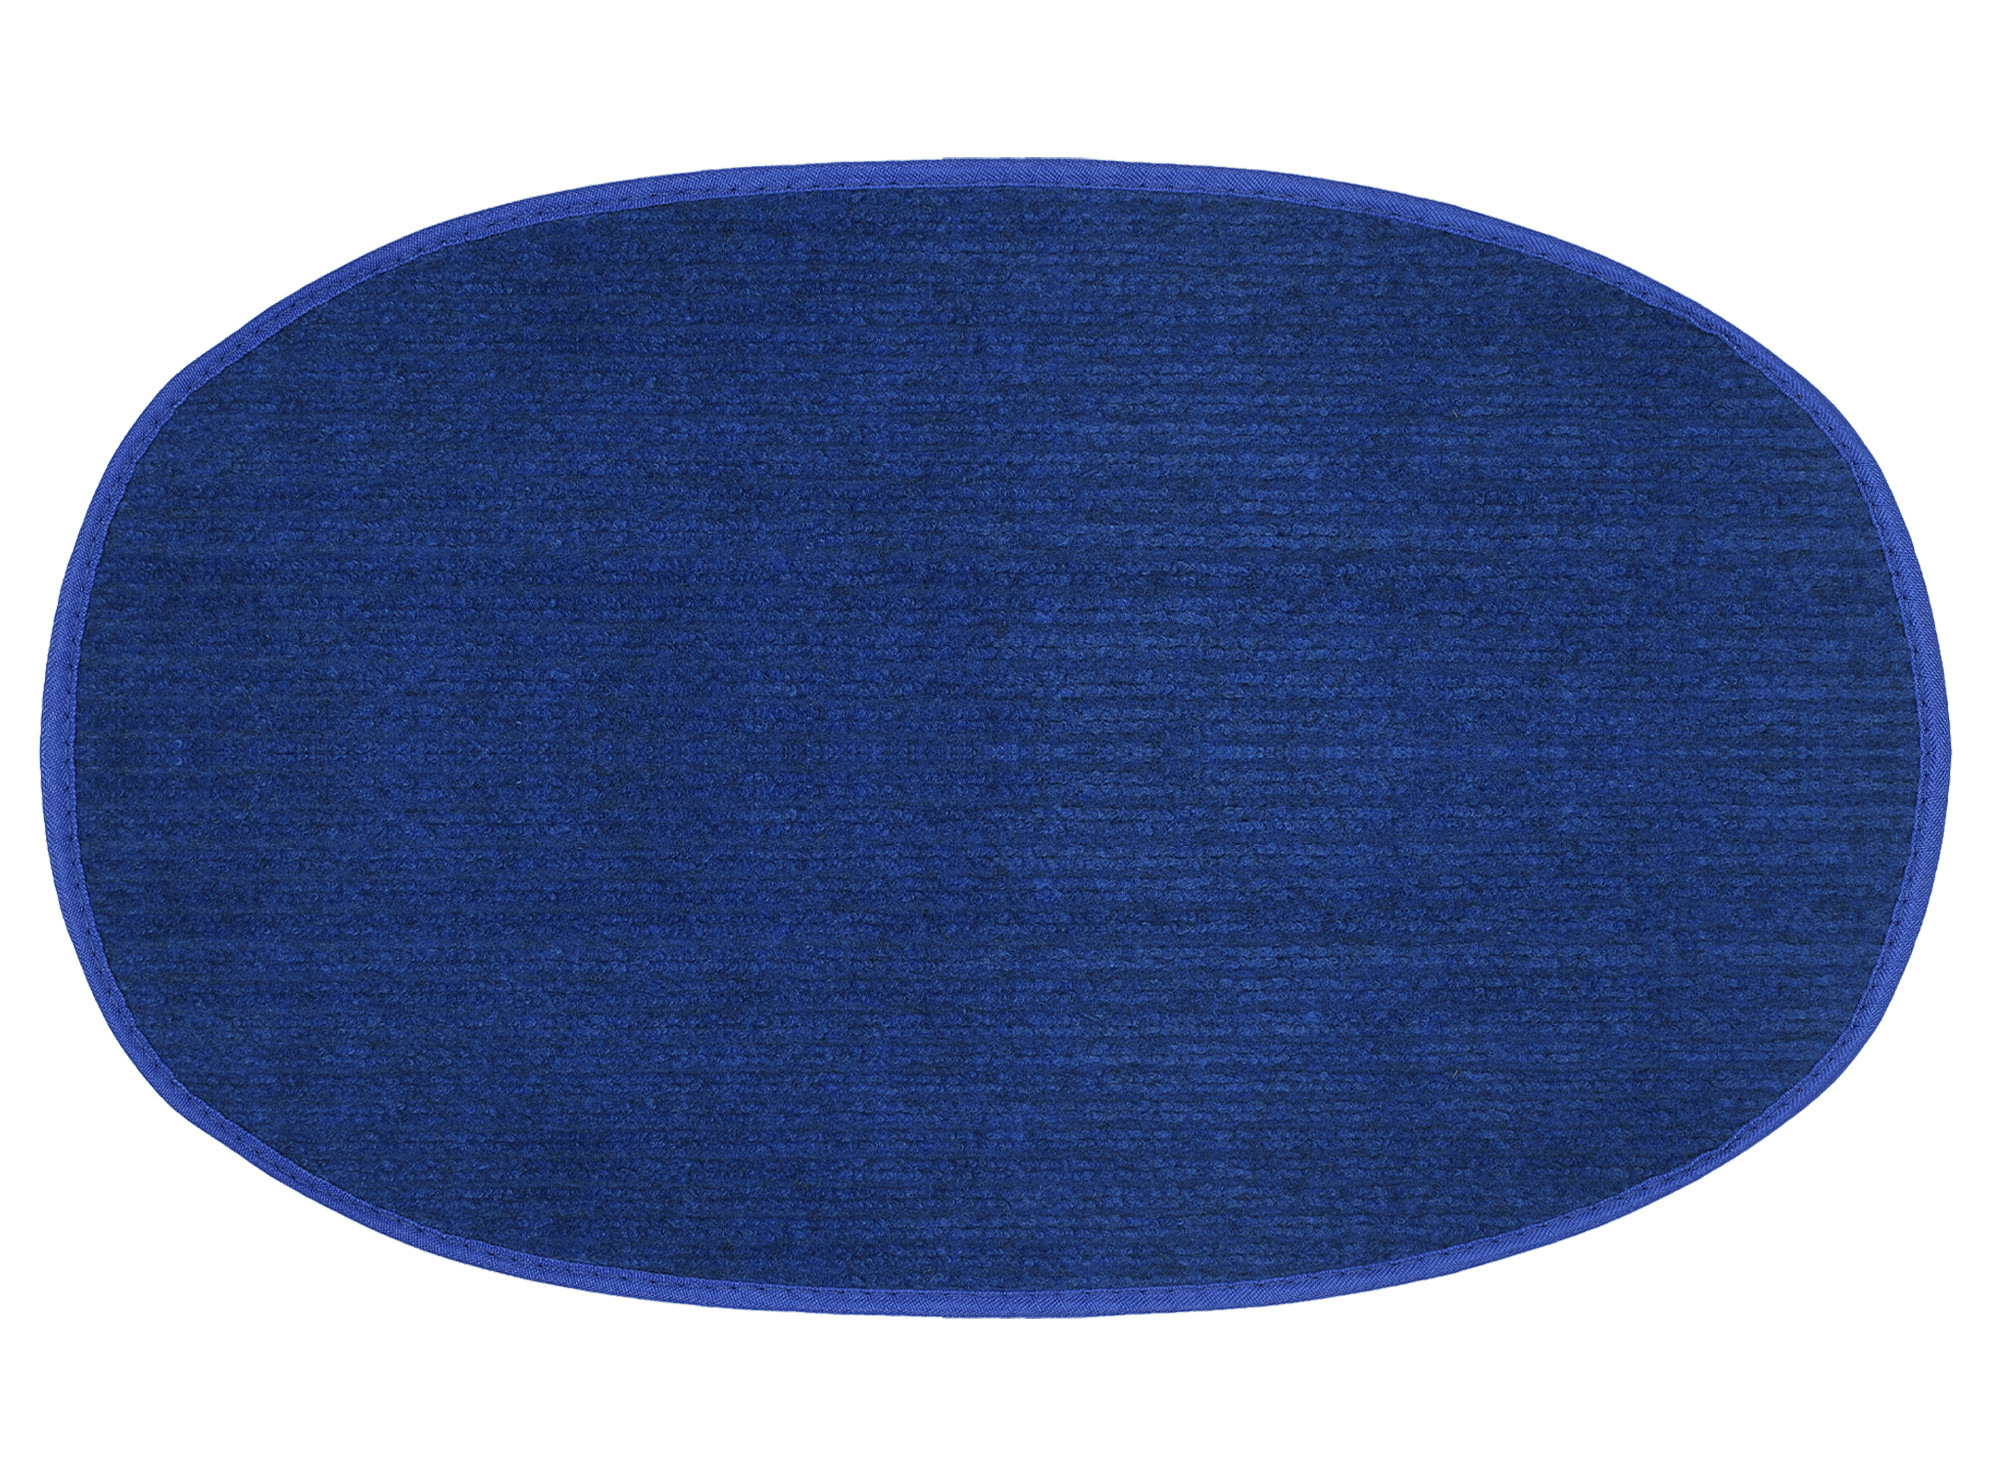 Kuber Industries Oval Shape Durable Microfiber Door Mat, Heavy Duty Doormat, Indoor Outdoor, Easy Clean, Waterproof, Low-Profile Mats for Entry, Patio, Garage (Set Of 3,14'' x 23'',Red & Maroon & Blue)-KUBMRT12131